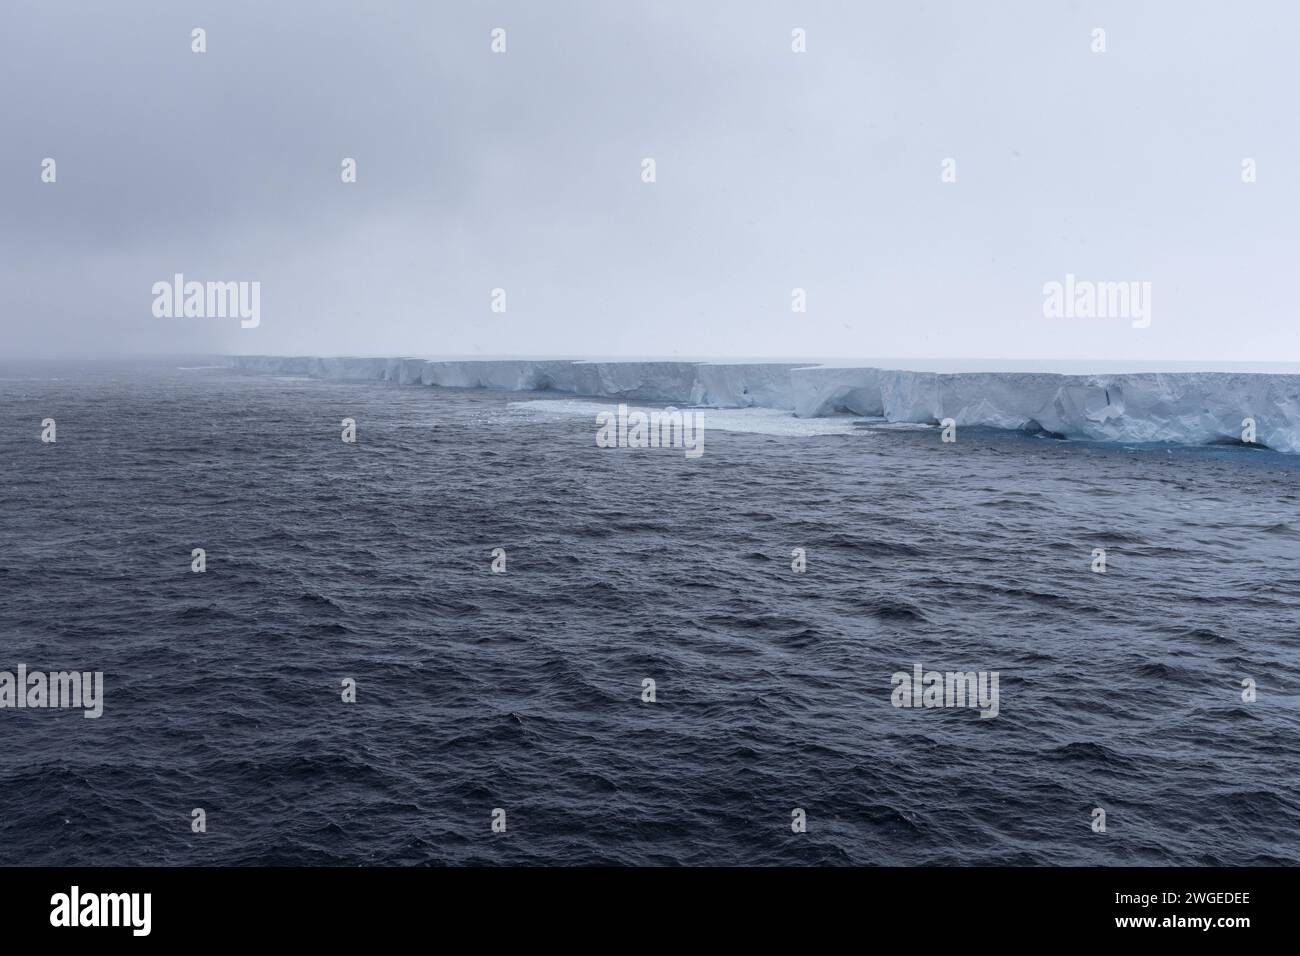 Iceberg A23a, il più grande iceberg del pianeta che si sposta a nord nell'Oceano meridionale. Iceberg che mostra segni di decadimento con archi e grotte che appaiono. Foto Stock